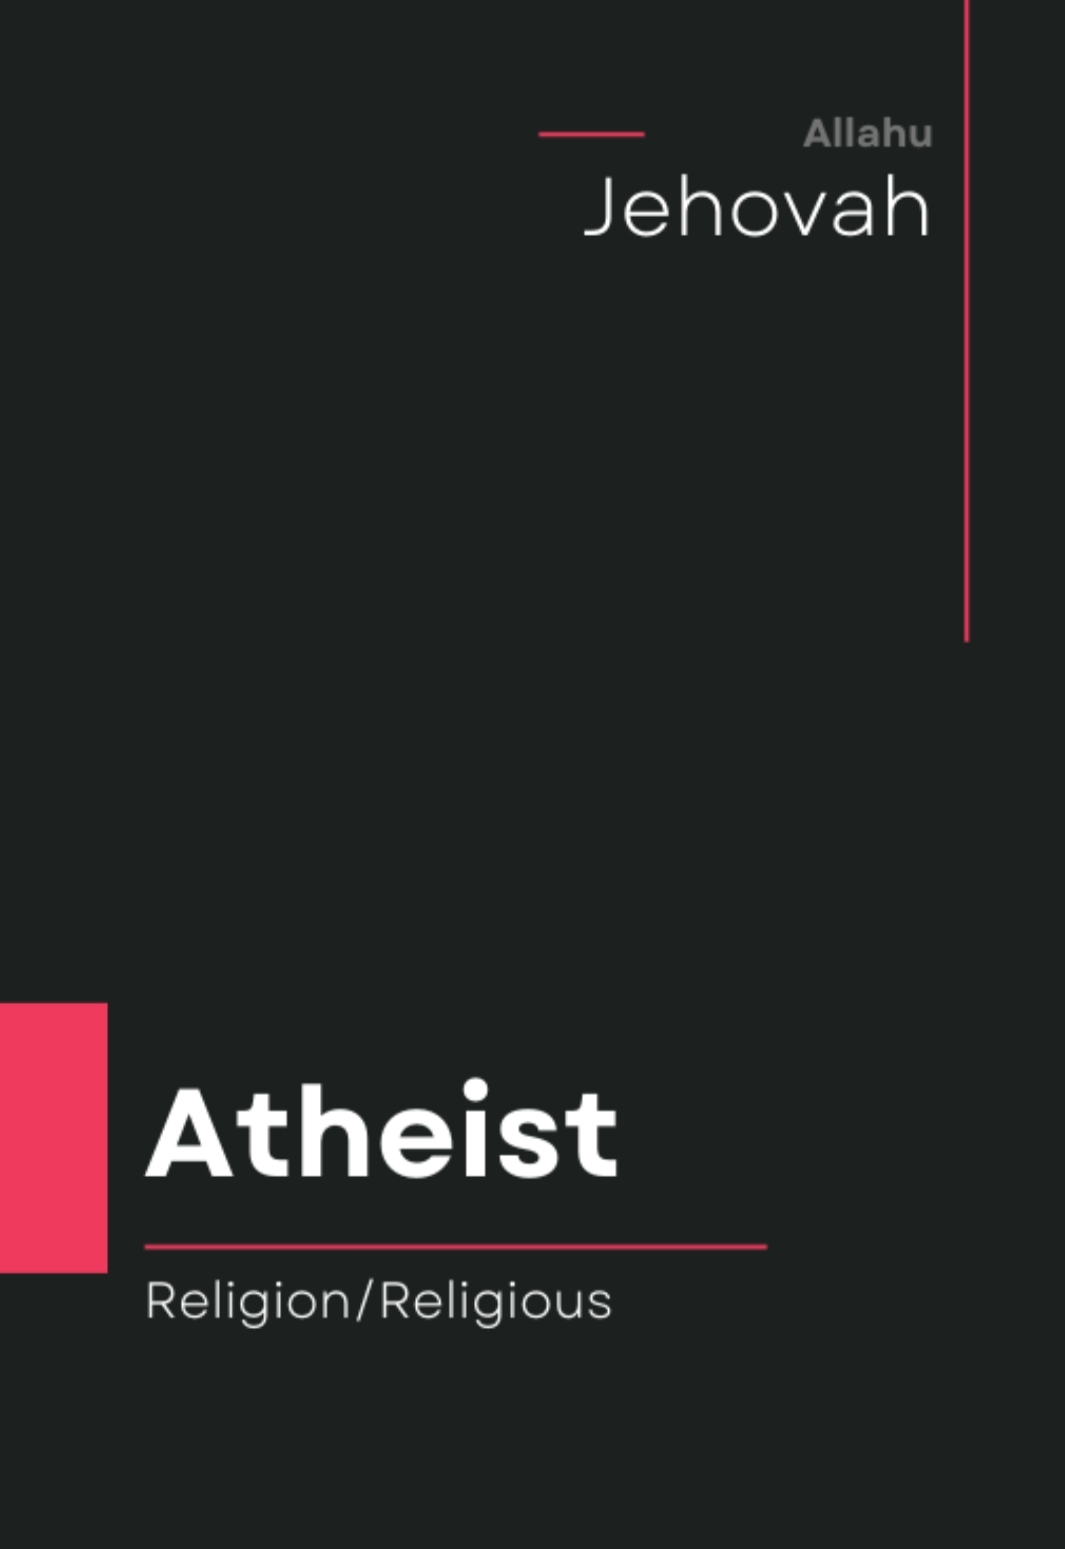 Atheist religion.jpg